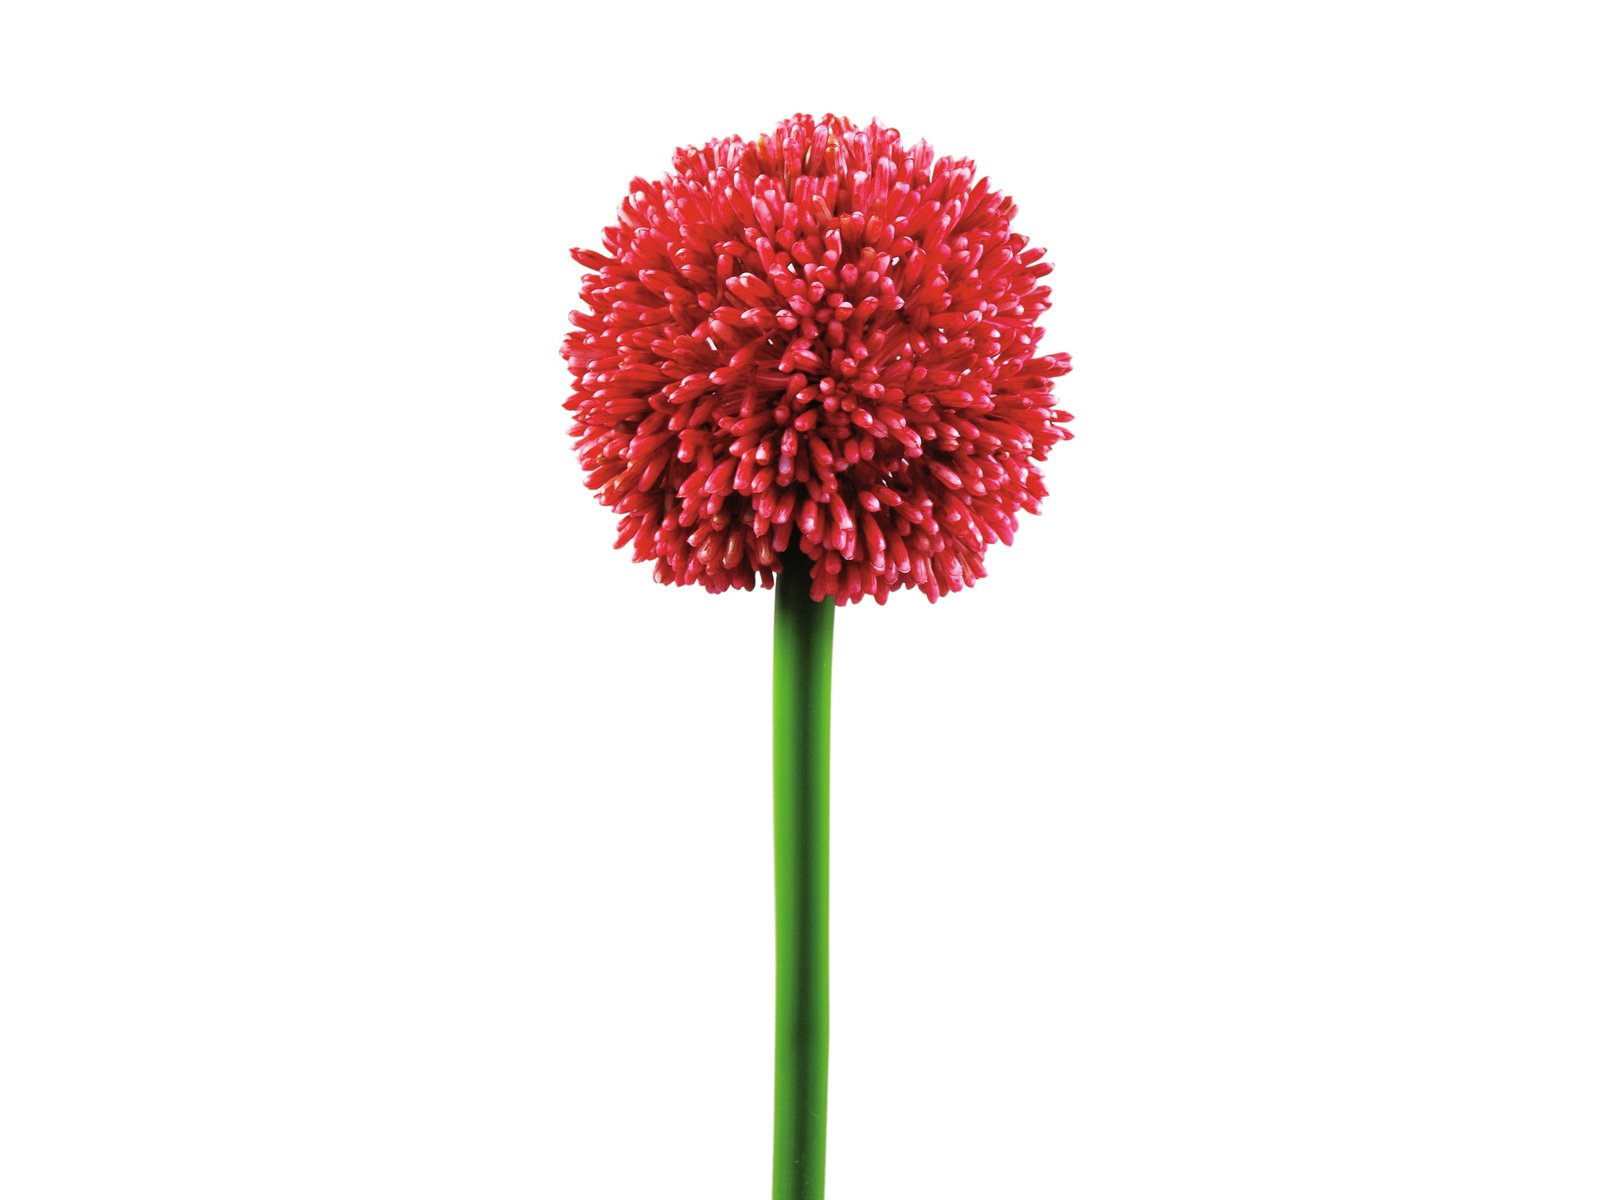 EUROPALMS Alliumzweig, künstlich, rot, 55cm